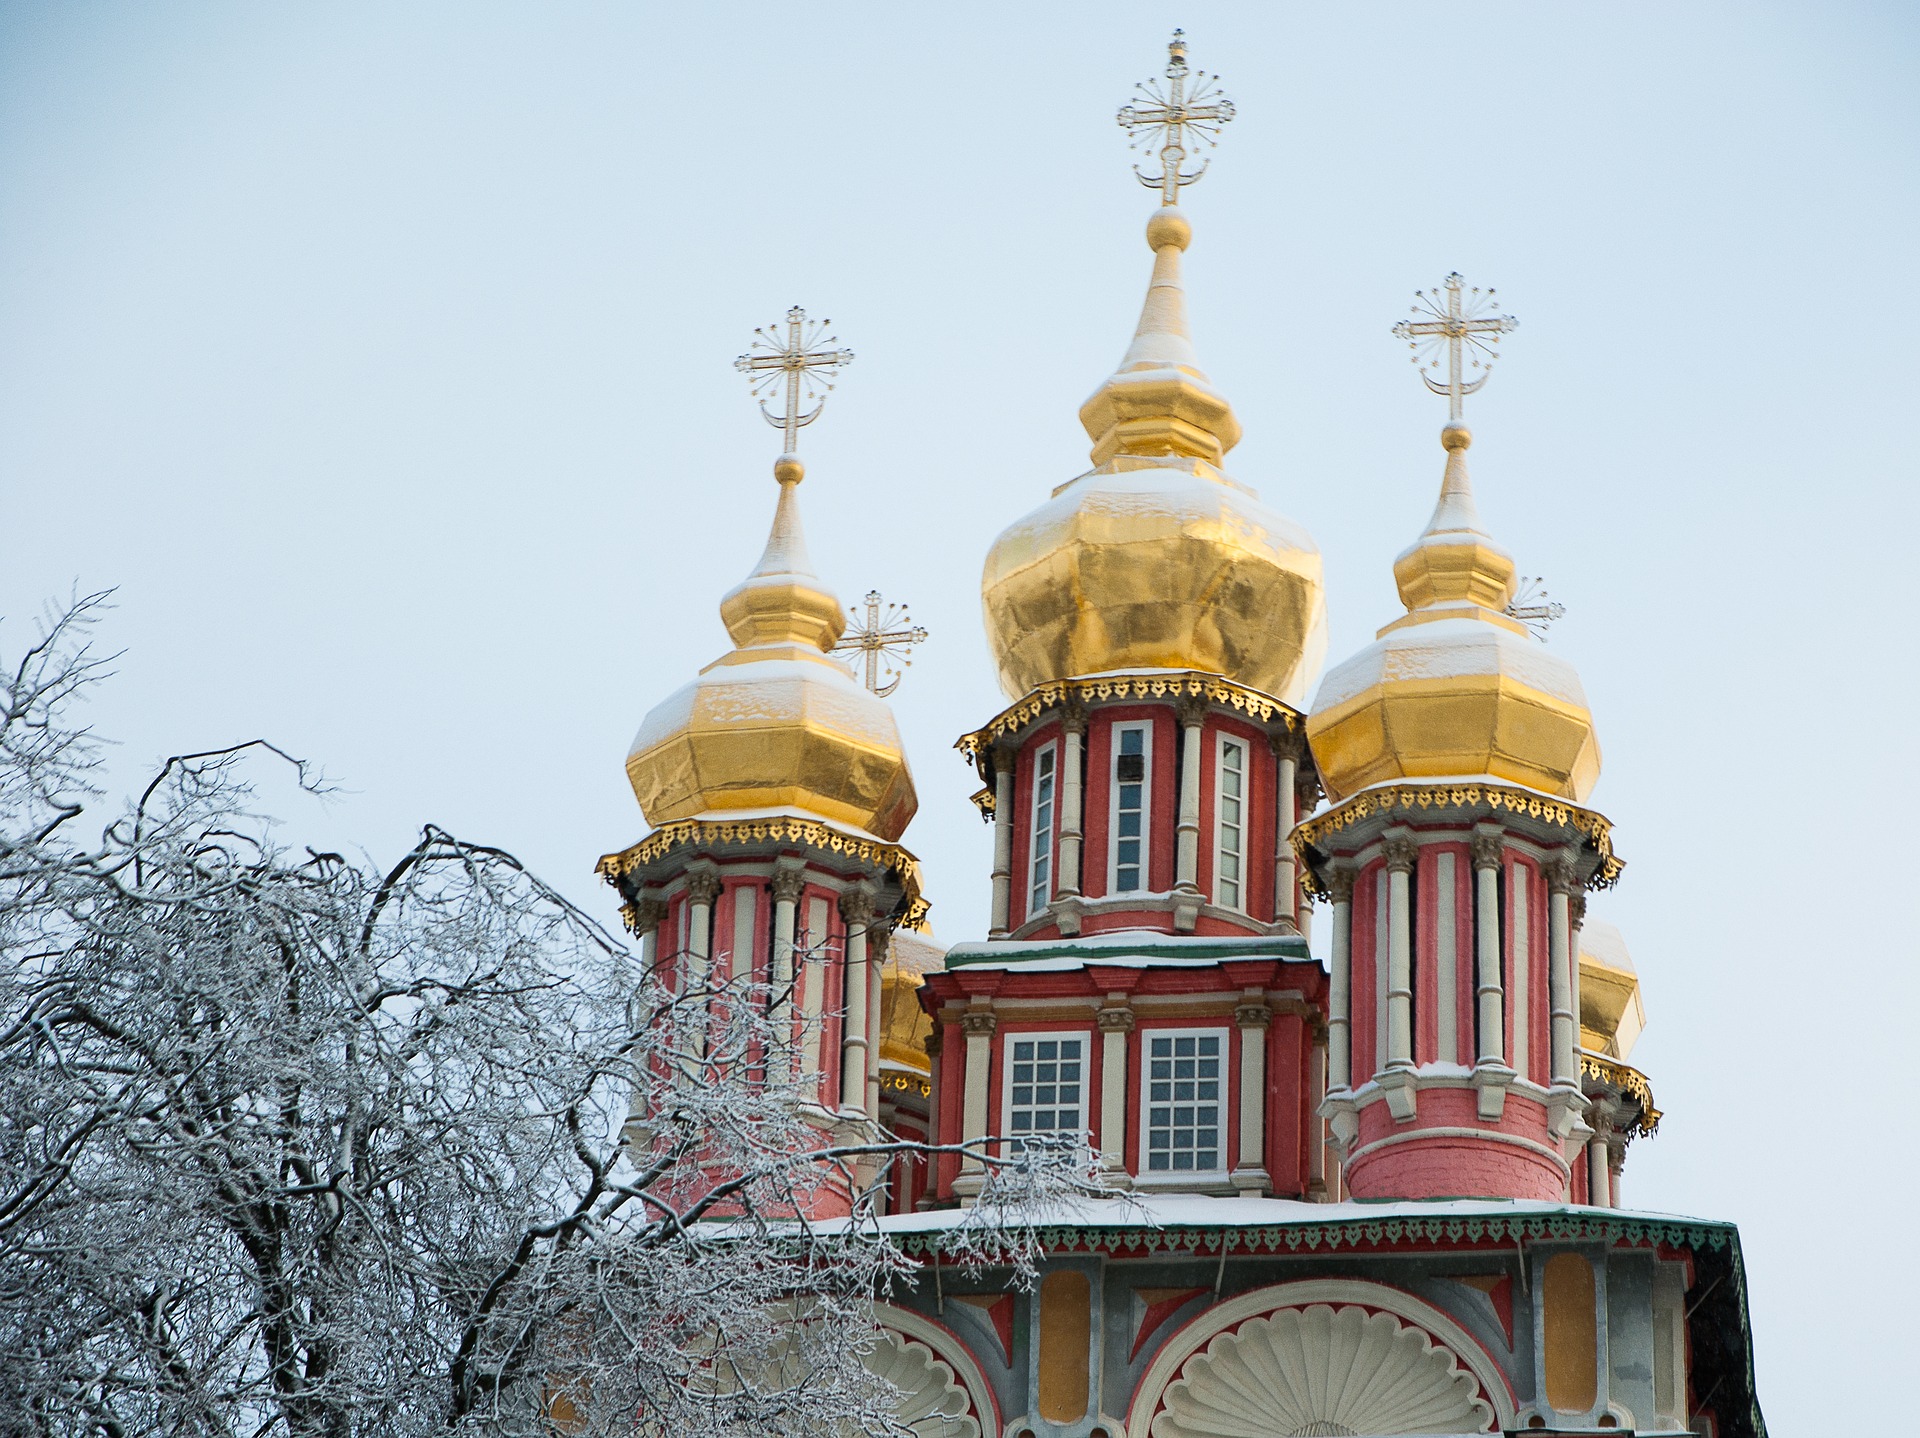 Ryssland kultur arkitektur reseinspiration